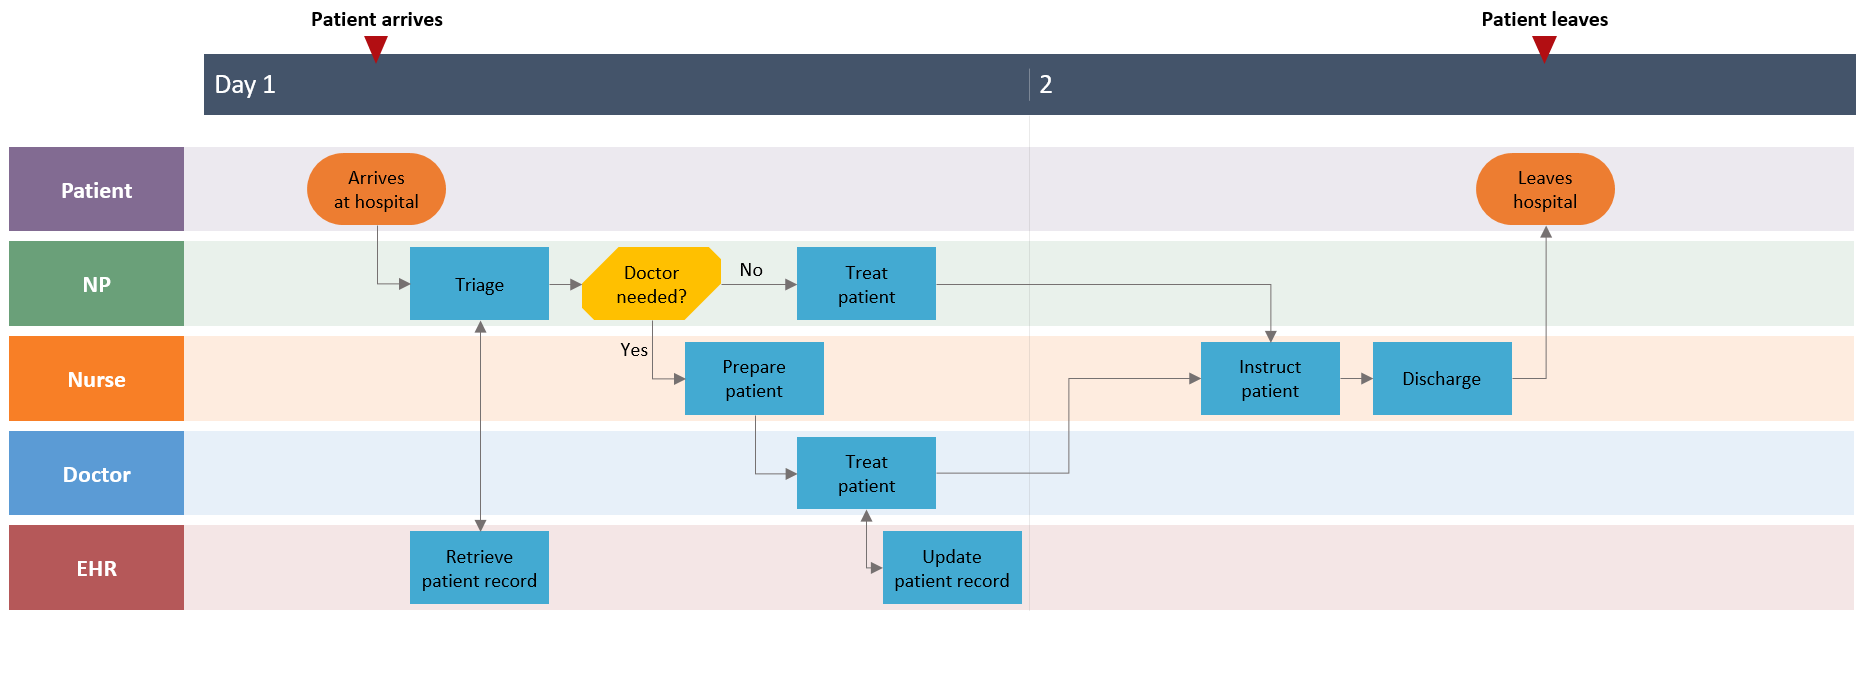 how-to-make-swimlane-diagrams-in-word-free-swimlane-diagram-templates